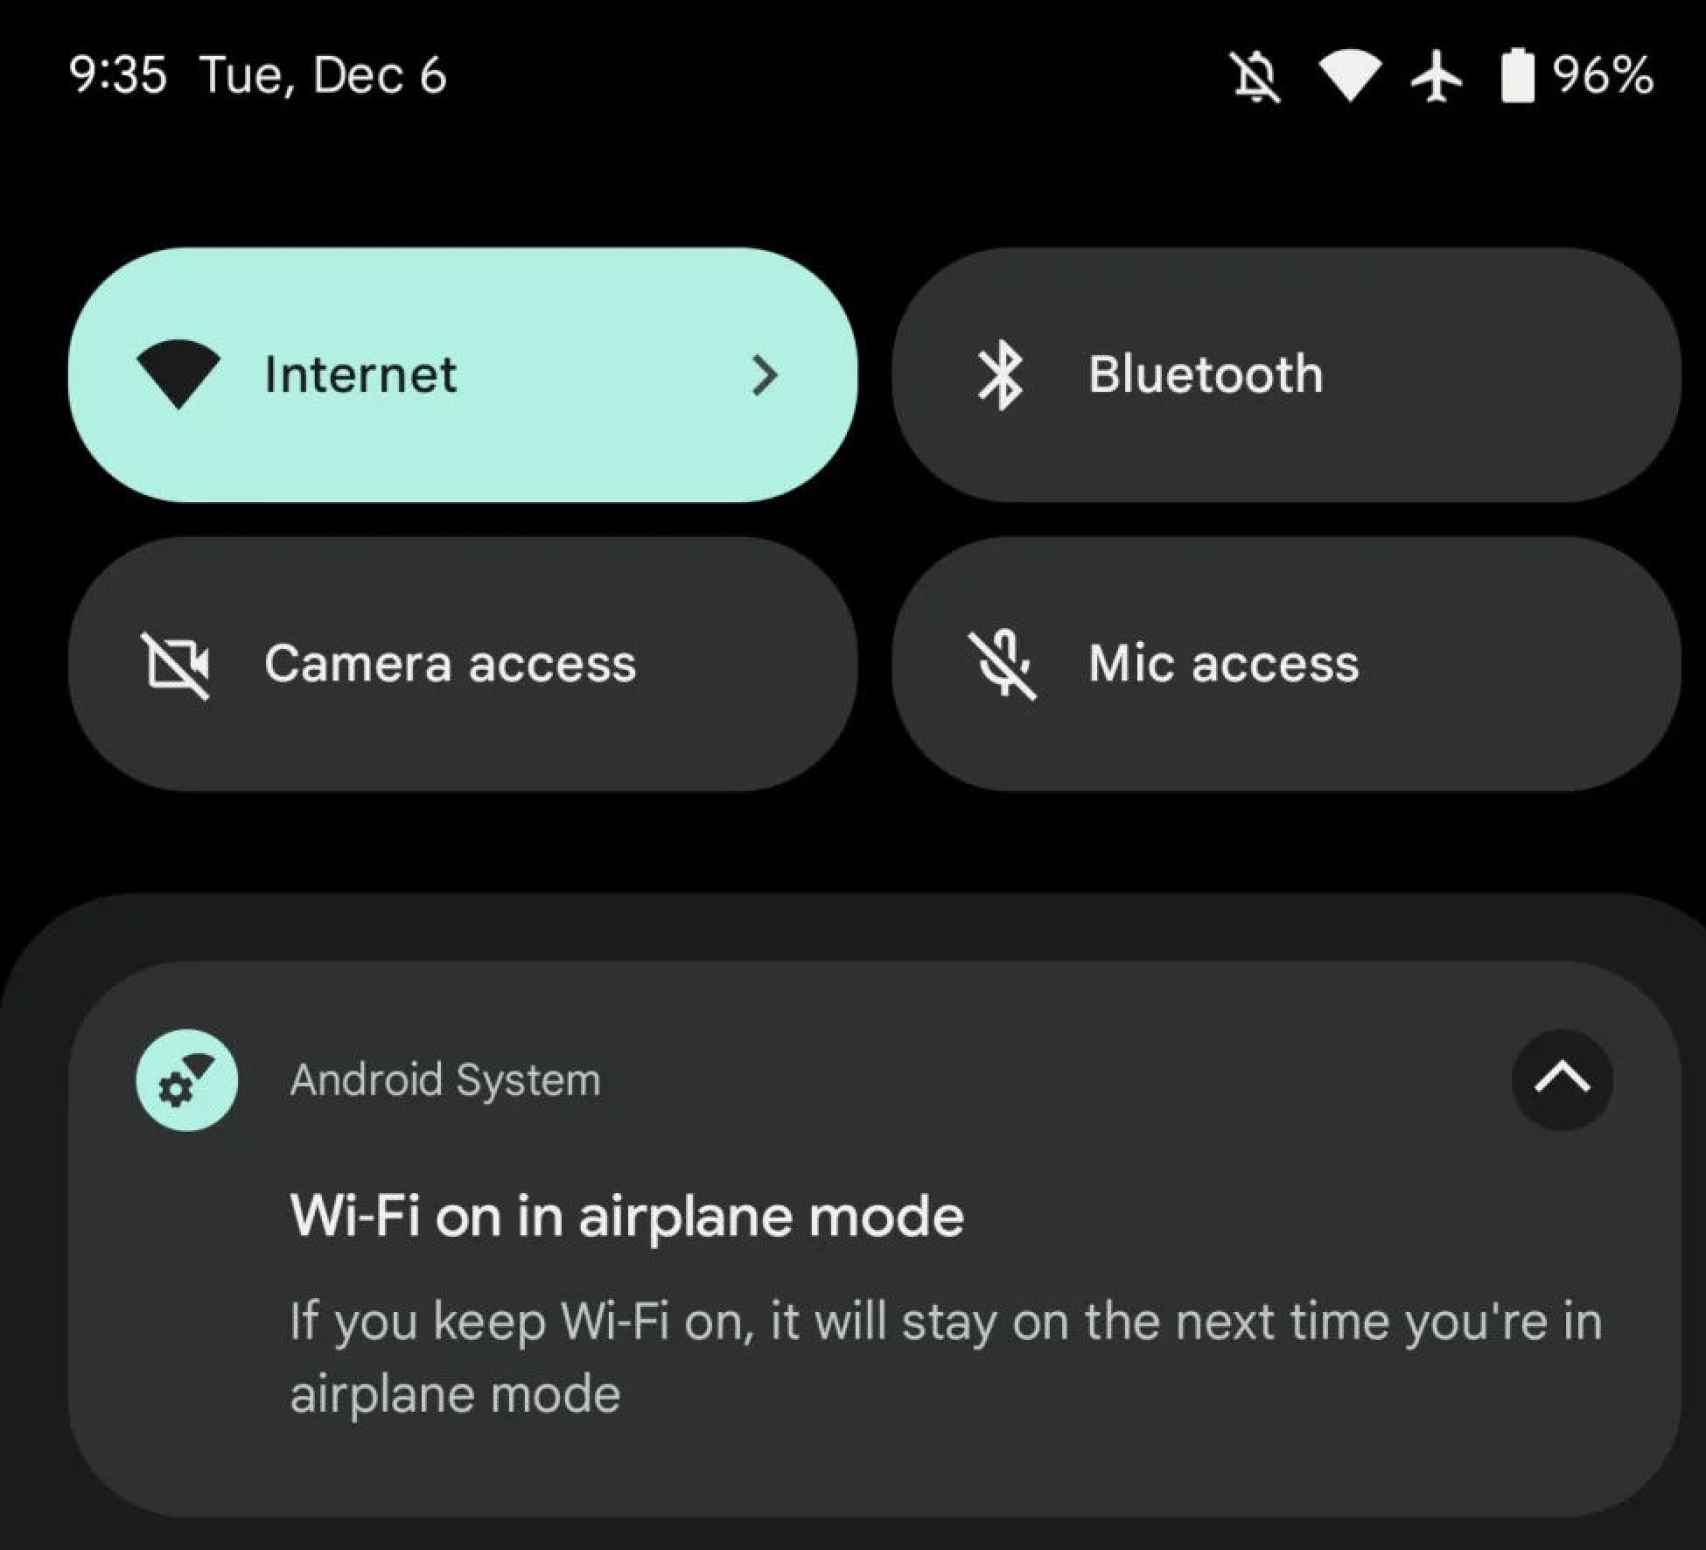 El móvil ahora te permitirá activar el WiFi con modo avión activado